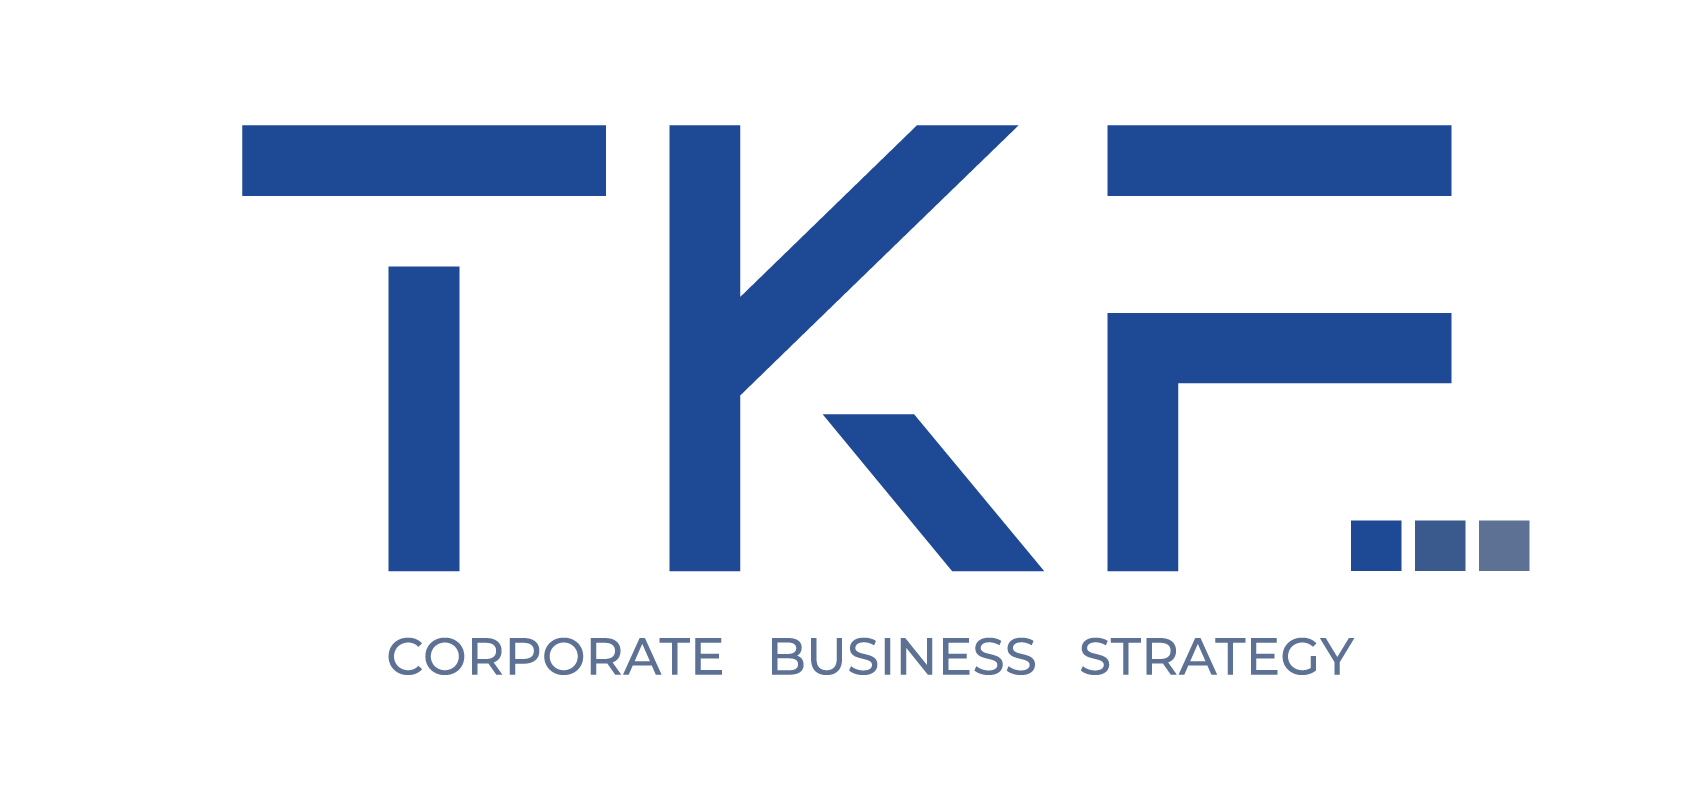 TKF 3 nasce dalla collaborazione di tre professionisti che insieme ad altri collaboratori Italiani ed esteri, hanno deciso di mettere a disposizione delle aziende un nuovo metodo di crescita e di sviluppo, grazie al proprio know how e la propria esperienza.